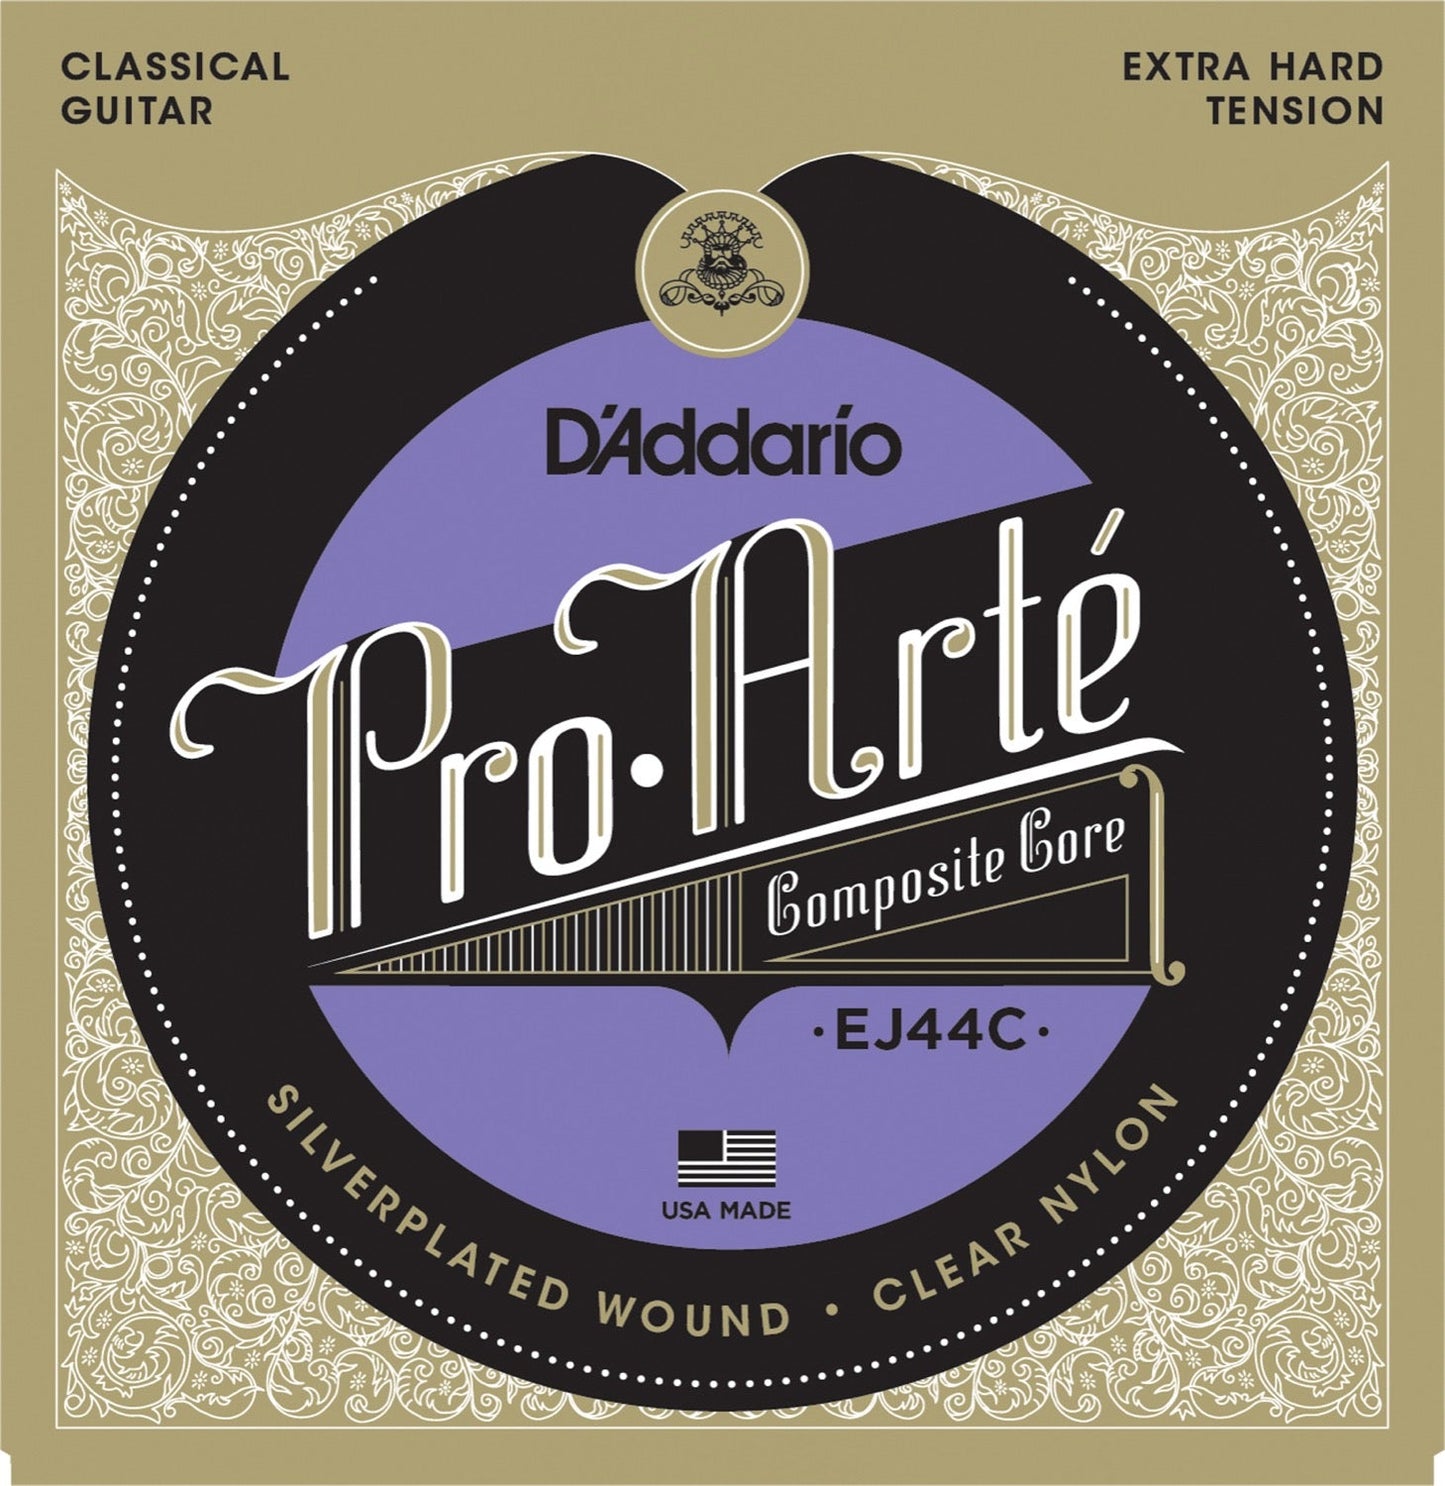 D'Addario - Pro Arte - Composite Core